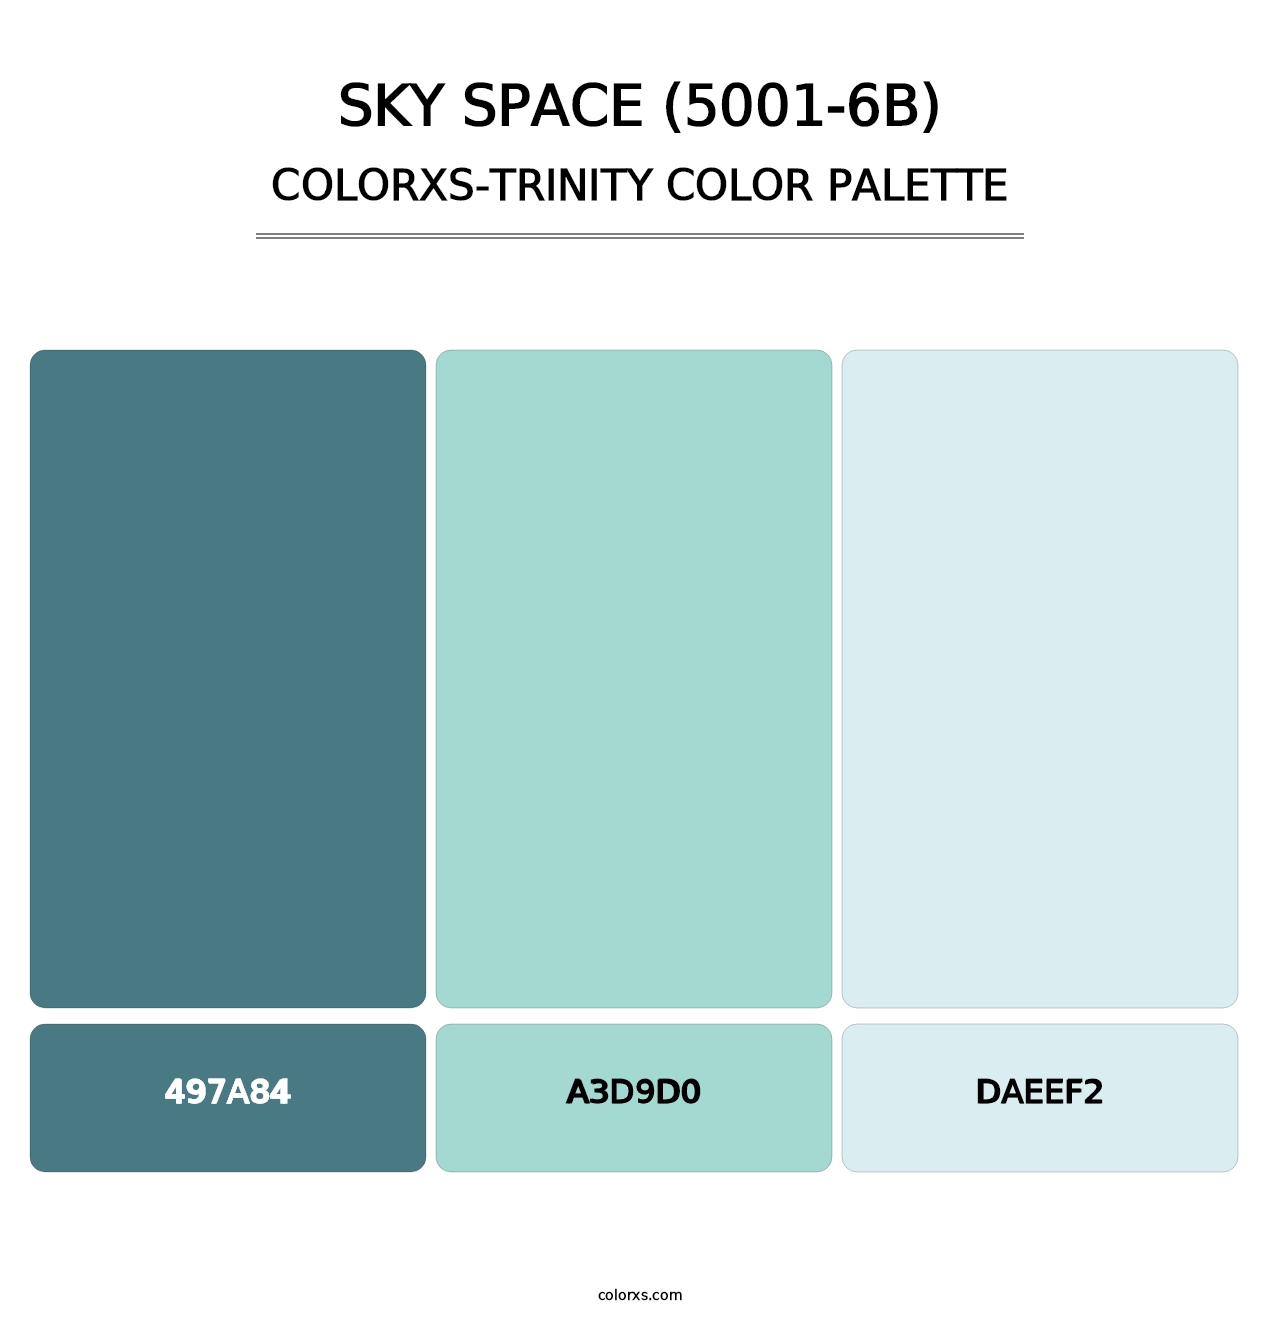 Sky Space (5001-6B) - Colorxs Trinity Palette